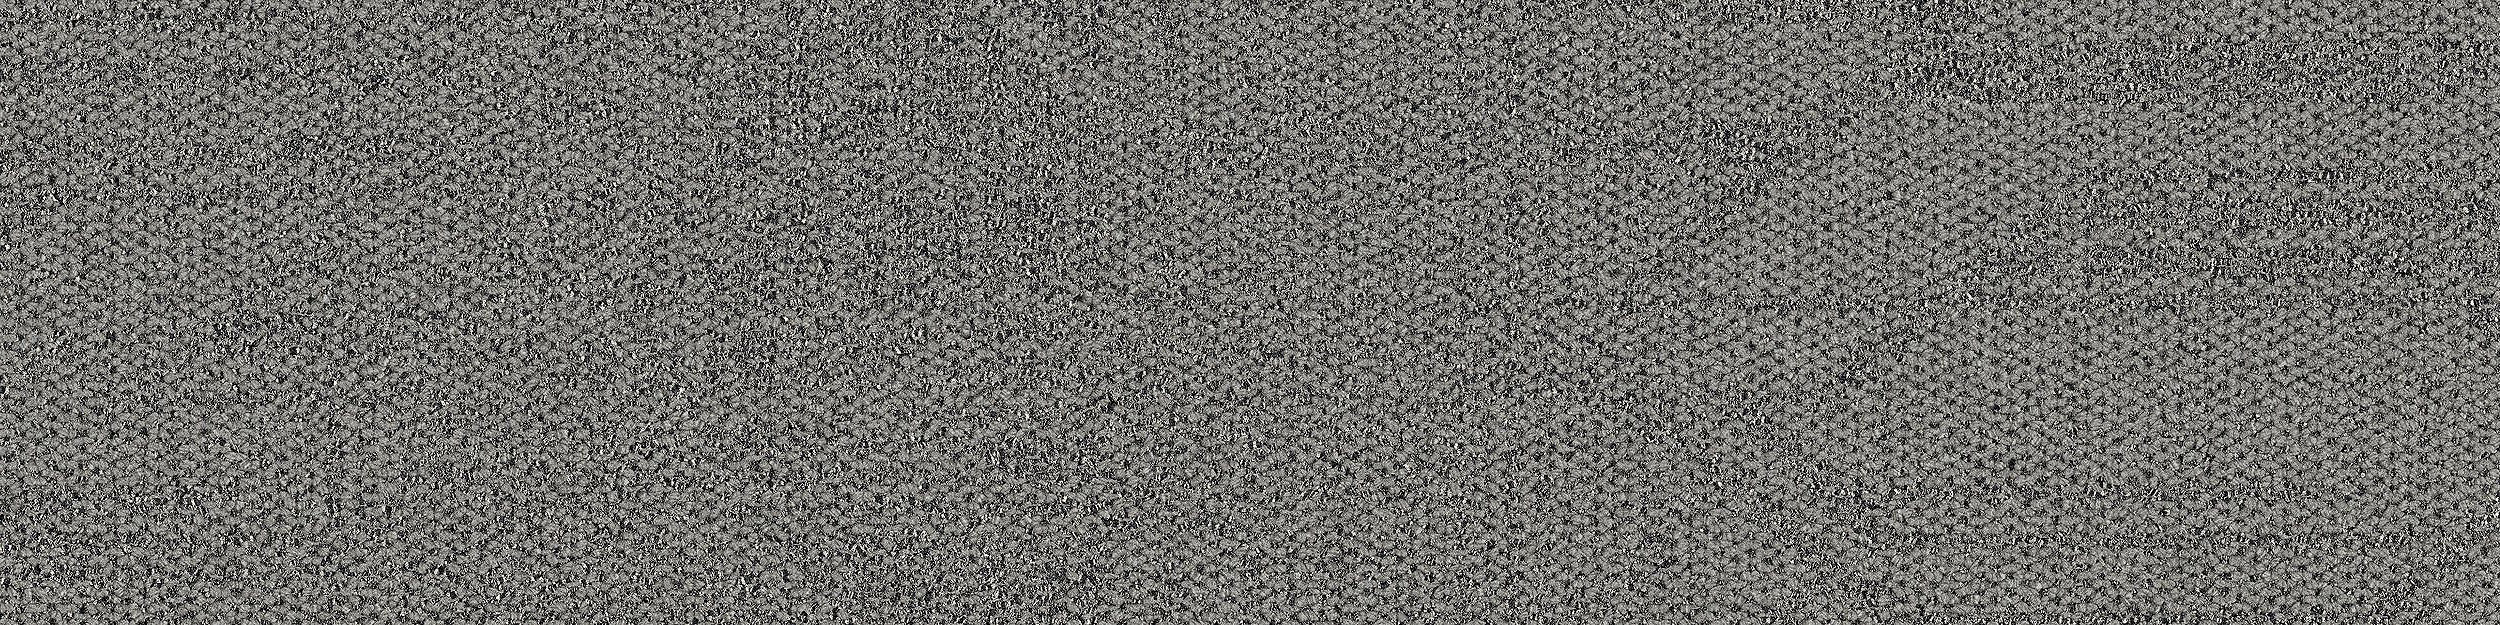 Open Air 411 Carpet Tile In Flannel numéro d’image 5